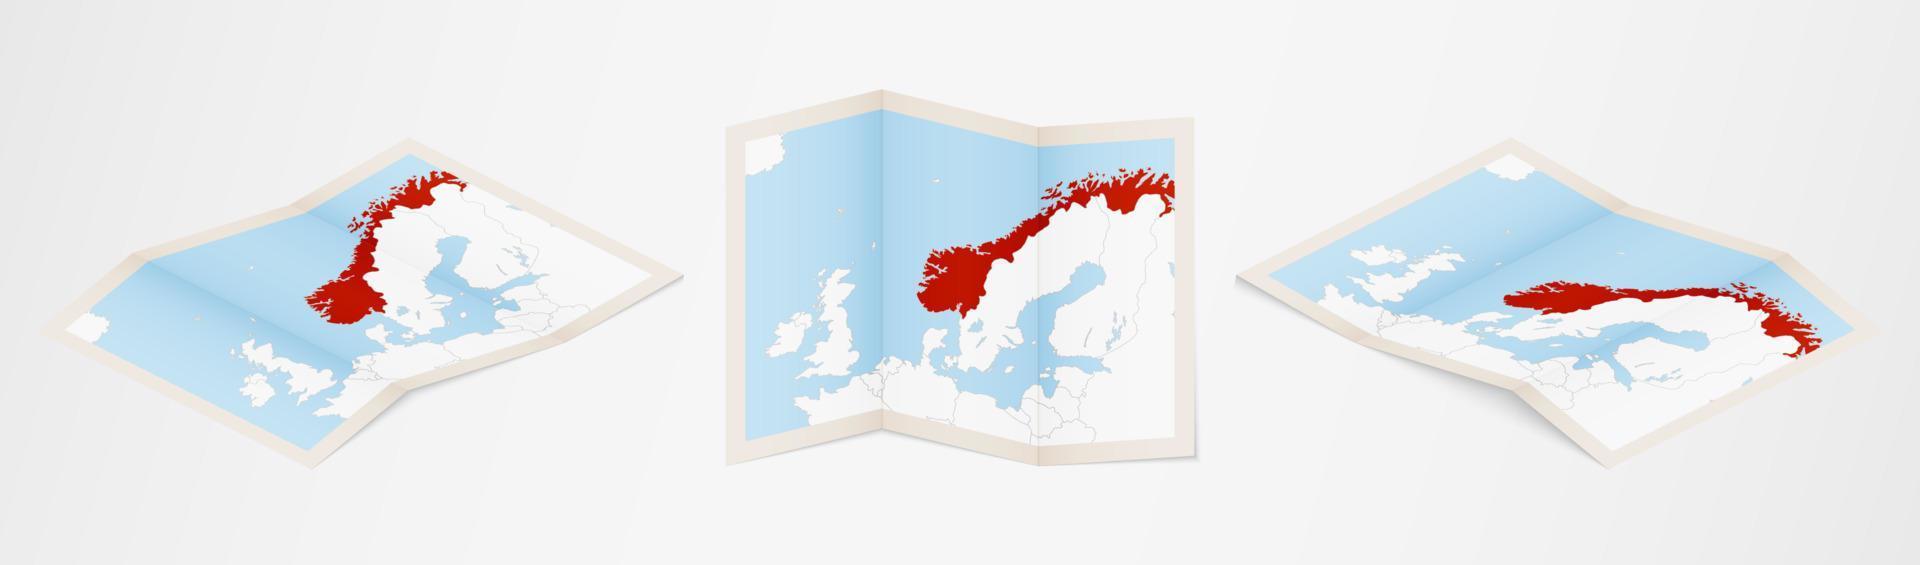 gevouwen kaart van Noorwegen in drie verschillend versies. vector